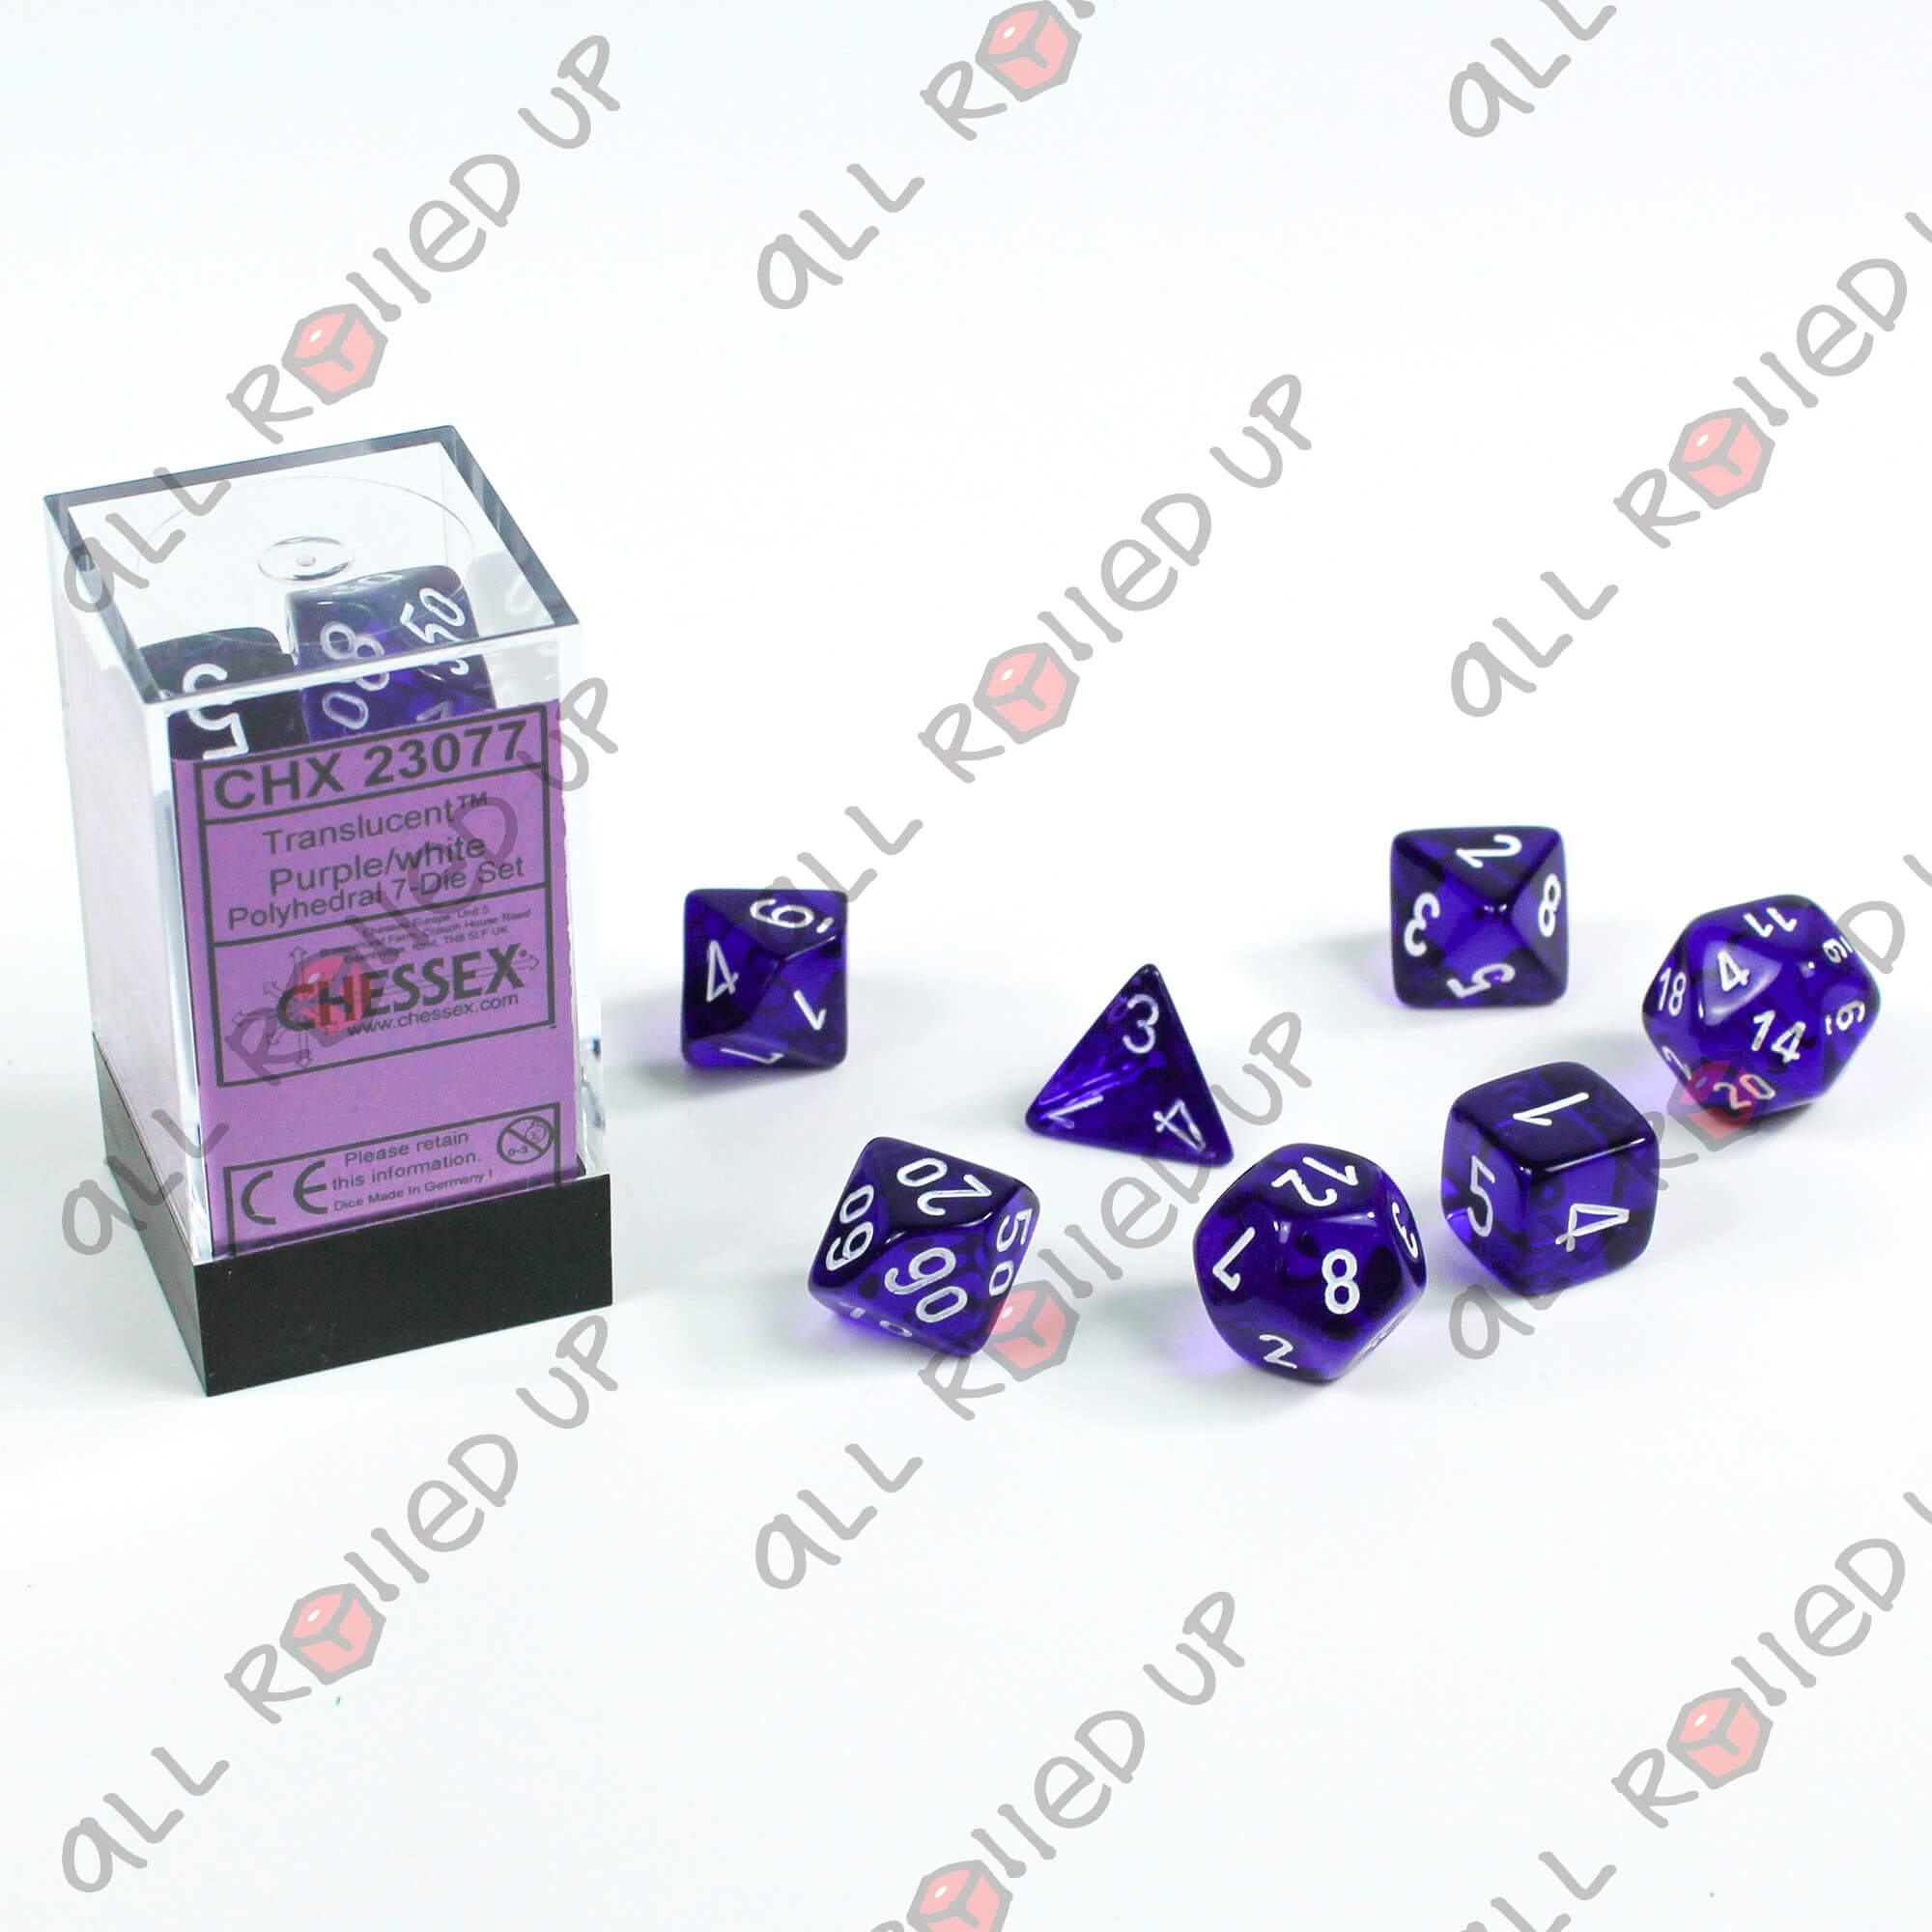 Chessex Translucent Purple/white Polyhedral 7-Die Set CHX 23077 